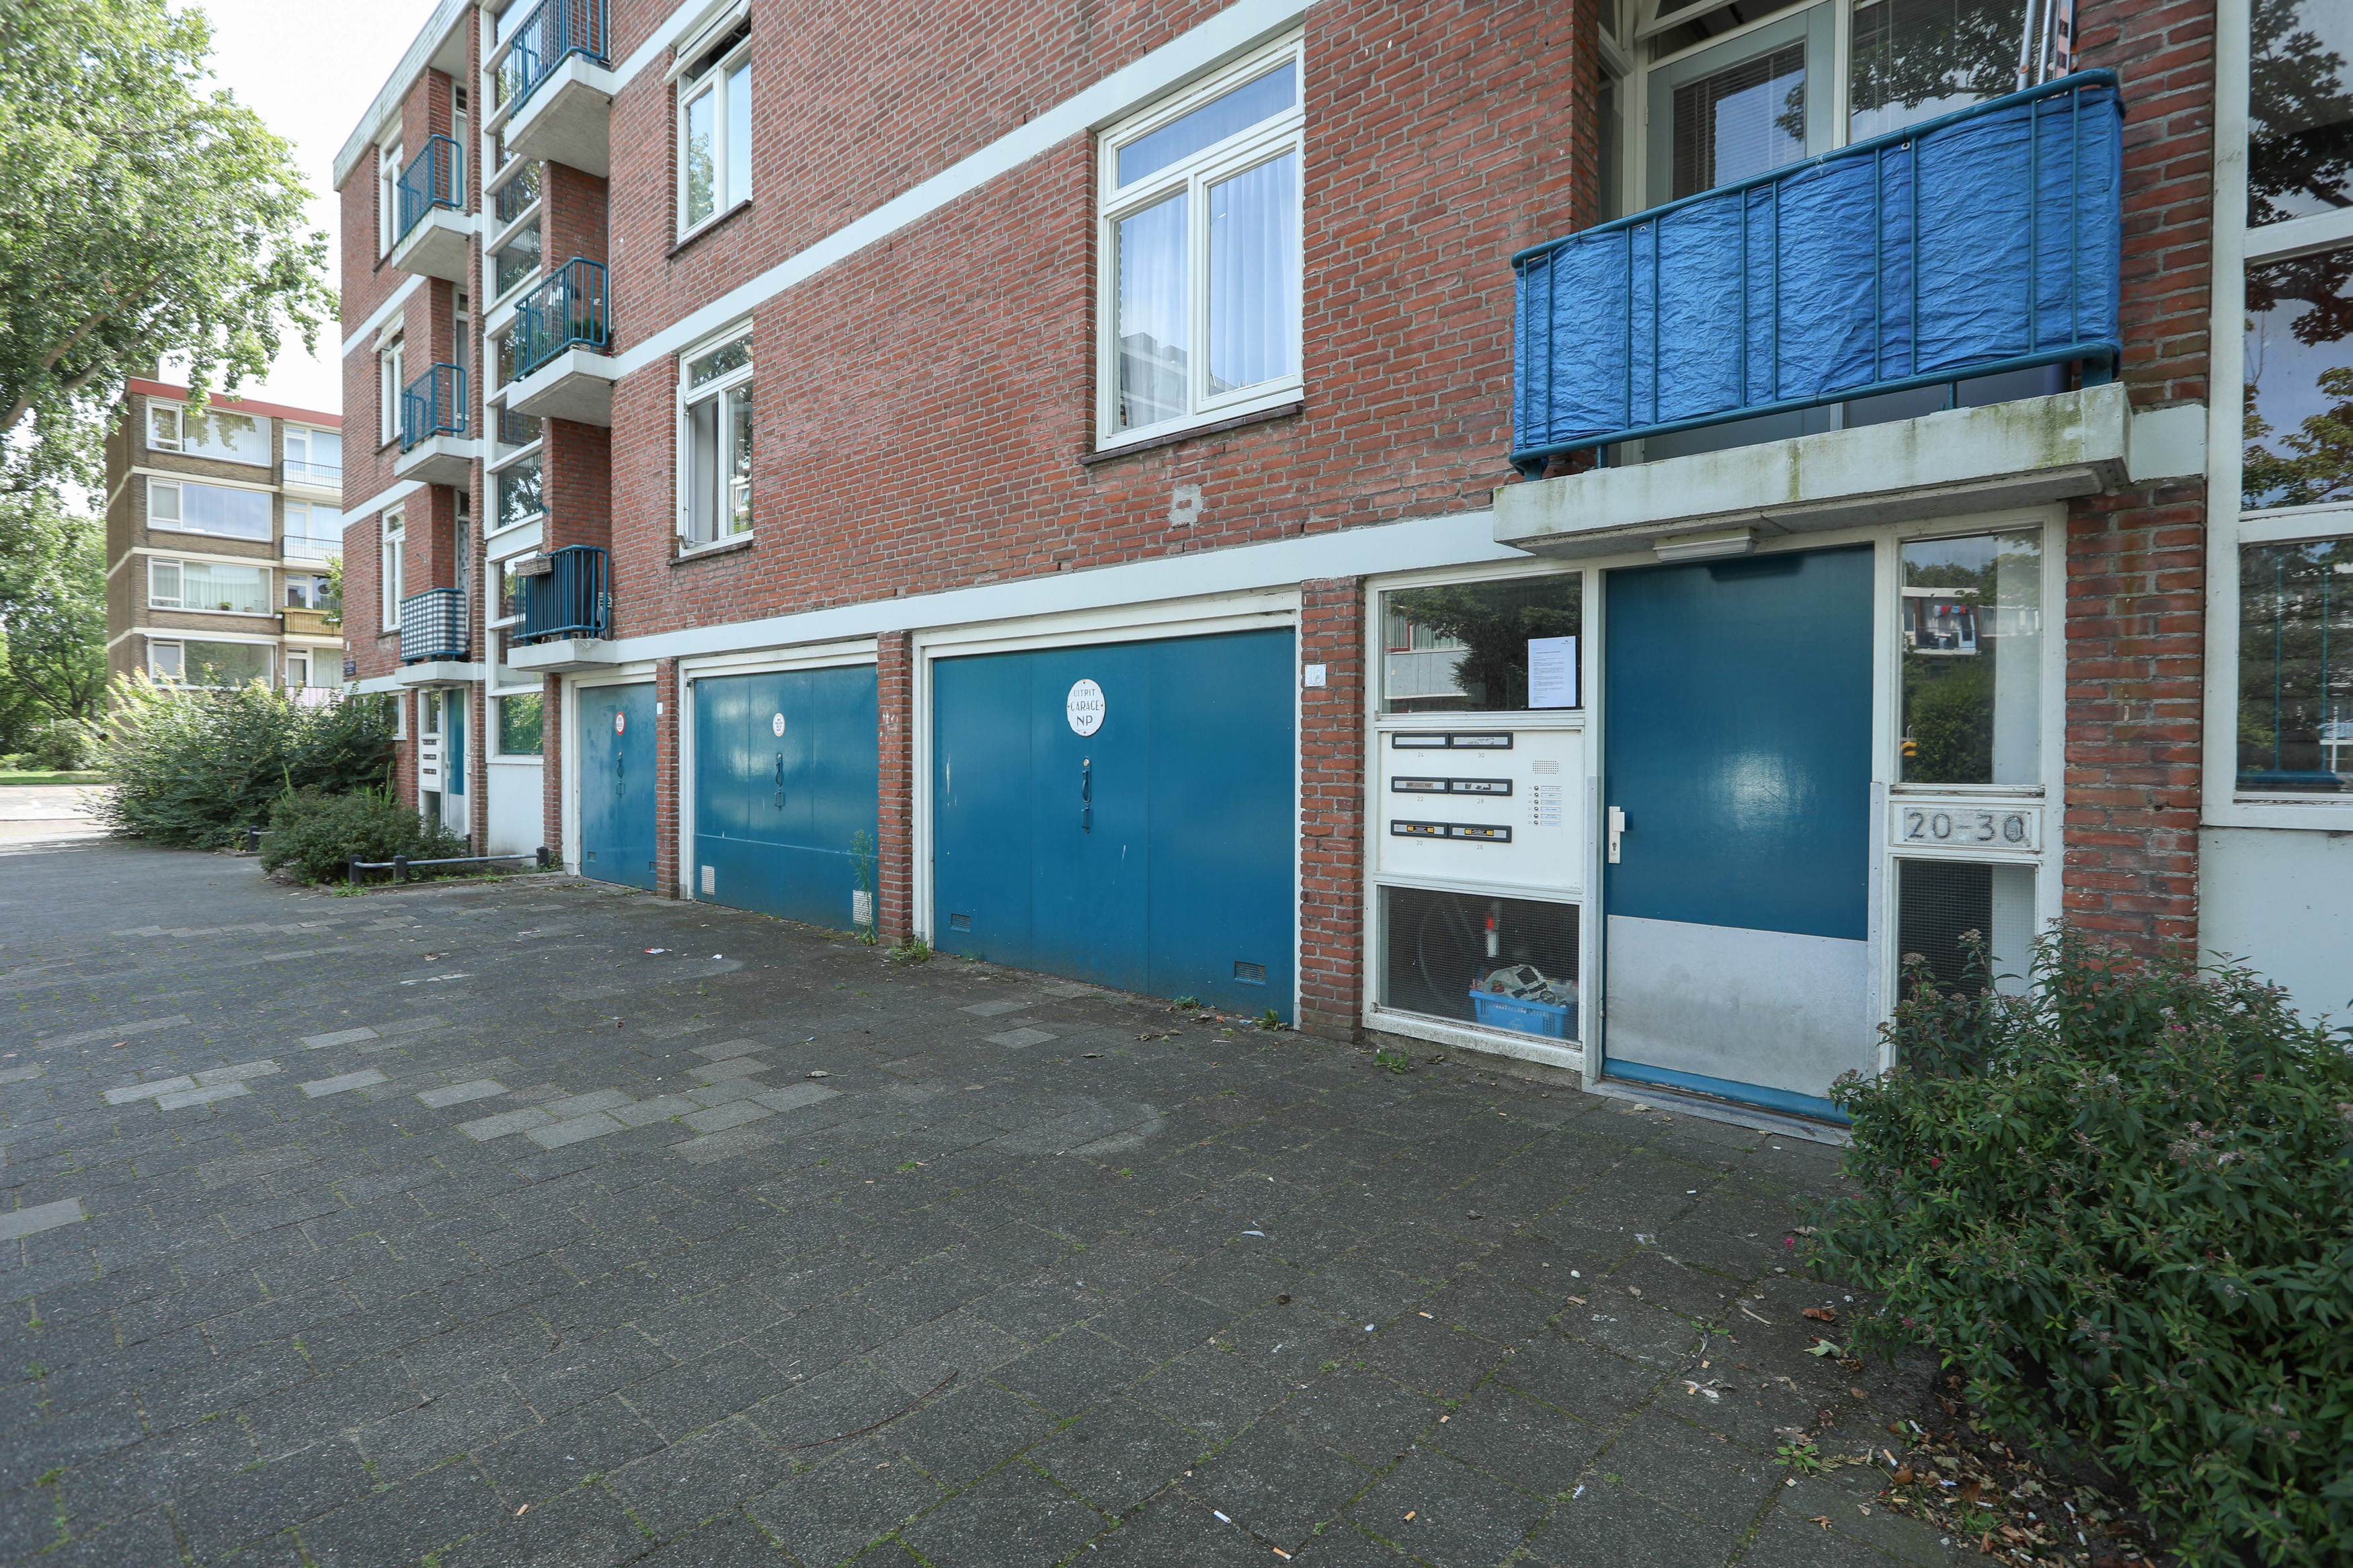 Vivaldistraat 24, 2324 HV Leiden, Nederland